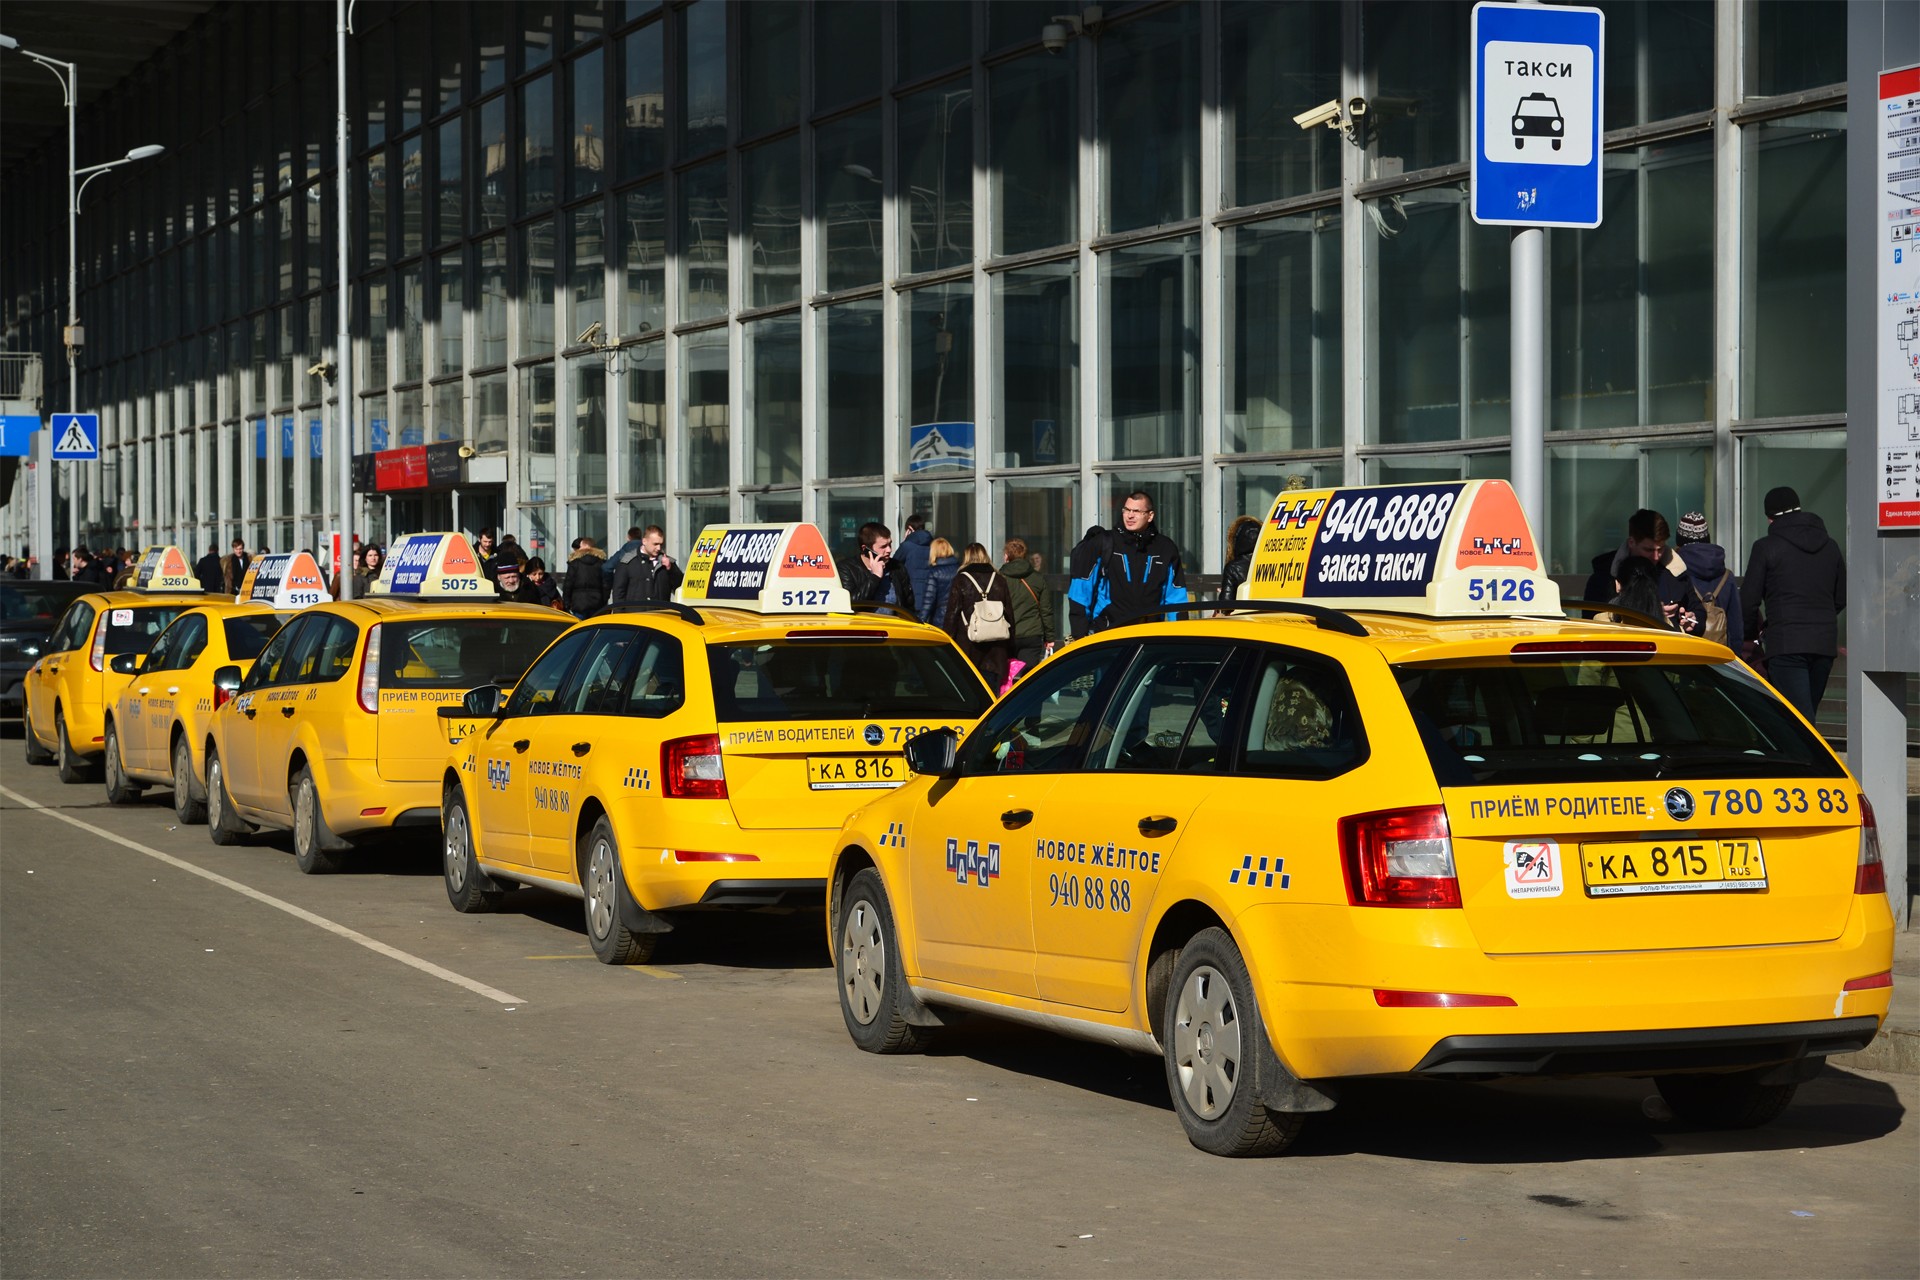 Такси мгу. Такси. Автомобиль «такси». Таксистская машина. Московское такси.